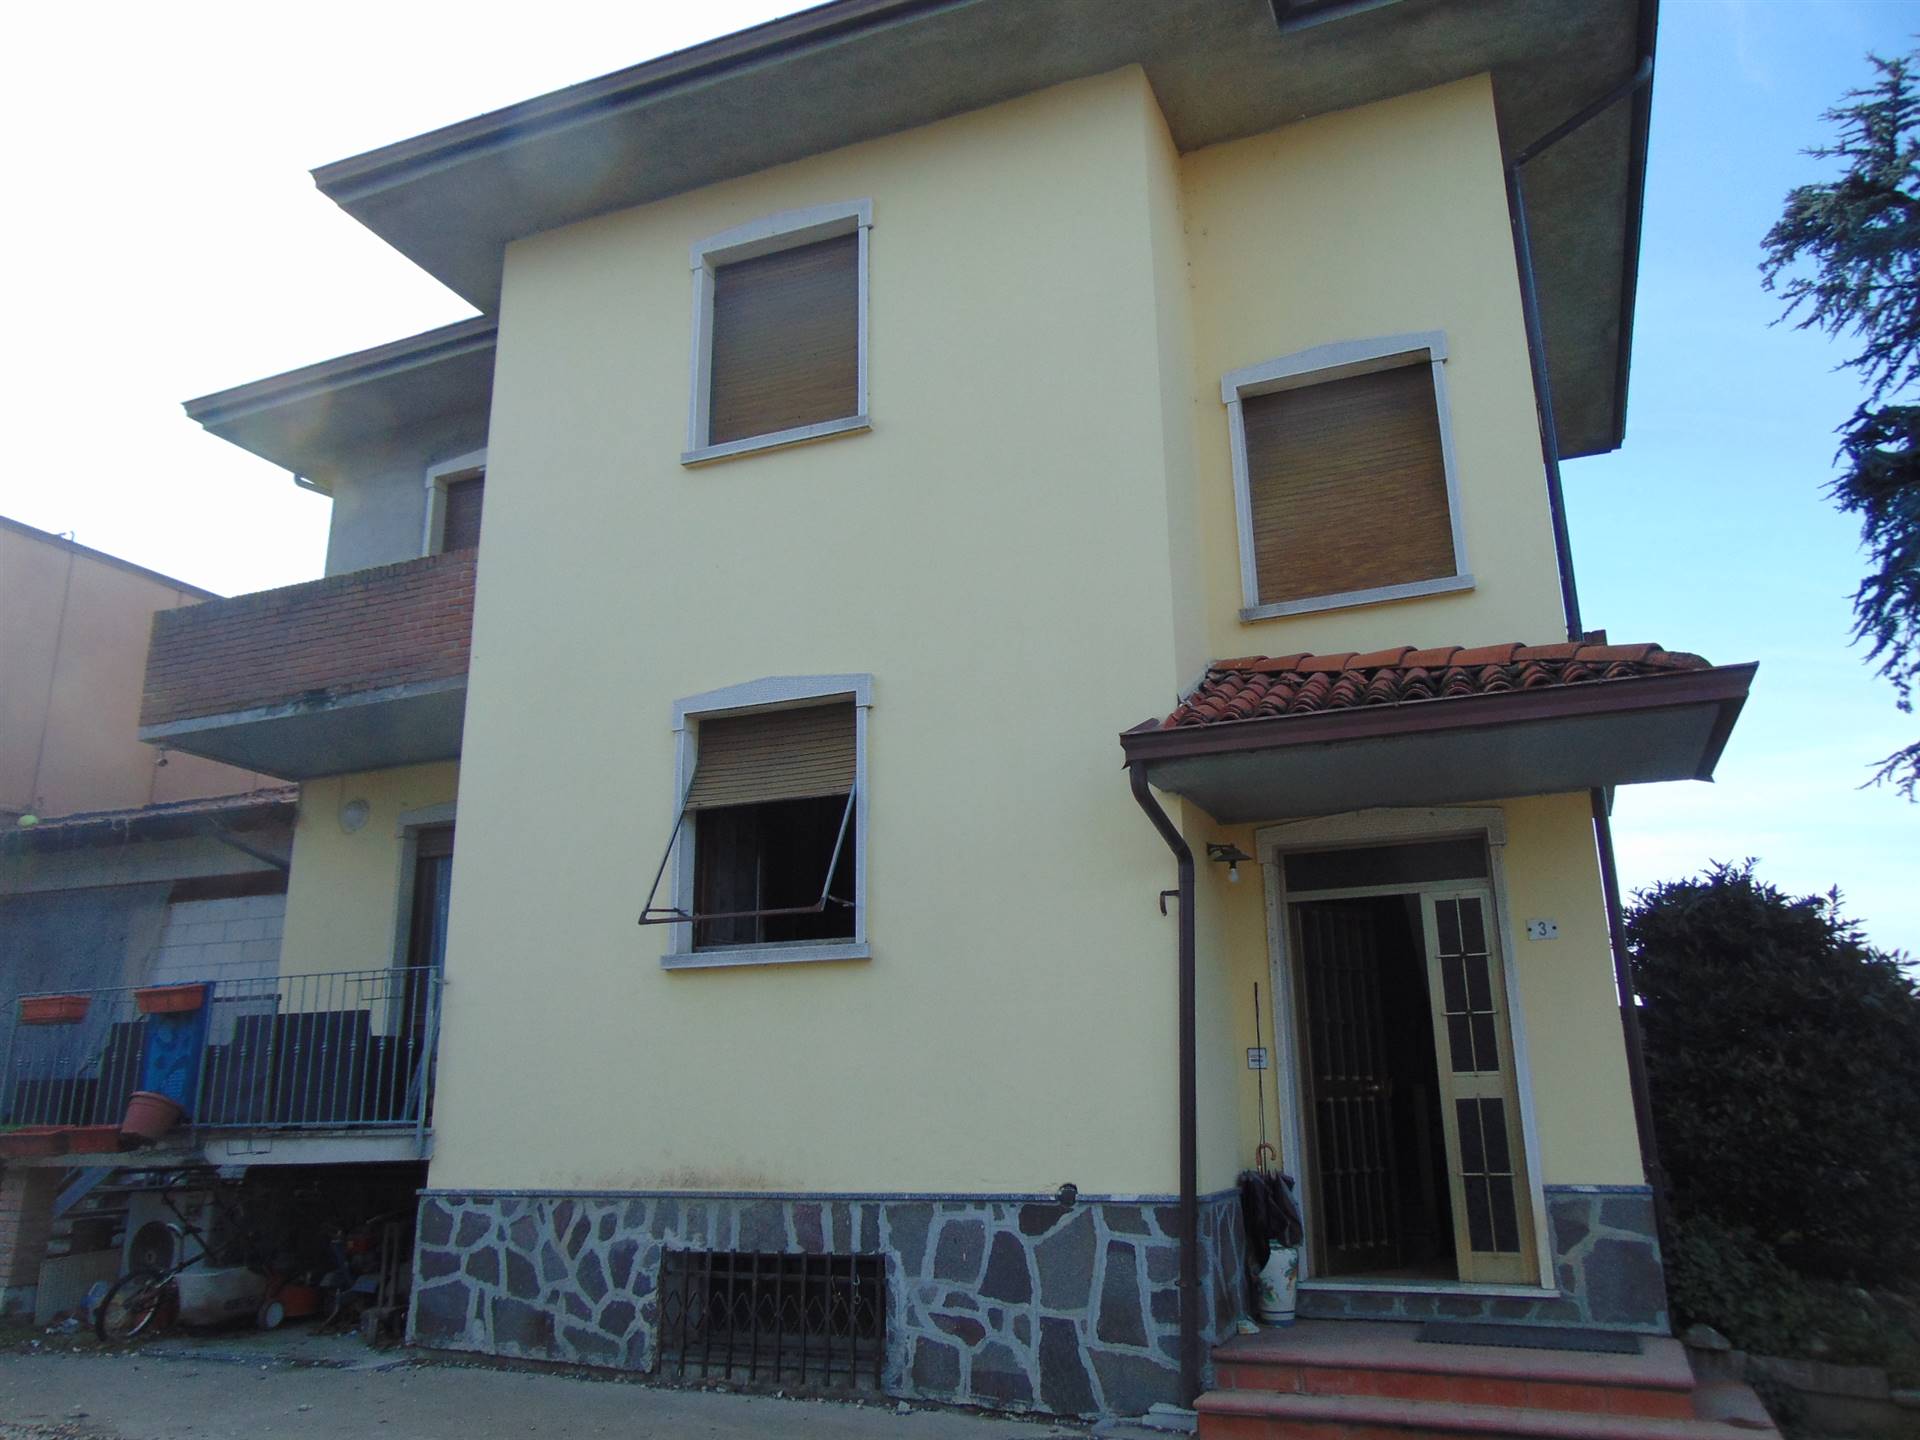 Appartamento in vendita a San Giorgio Piacentino, 3 locali, zona Località: SAN GIORGIO, prezzo € 90.000 | CambioCasa.it